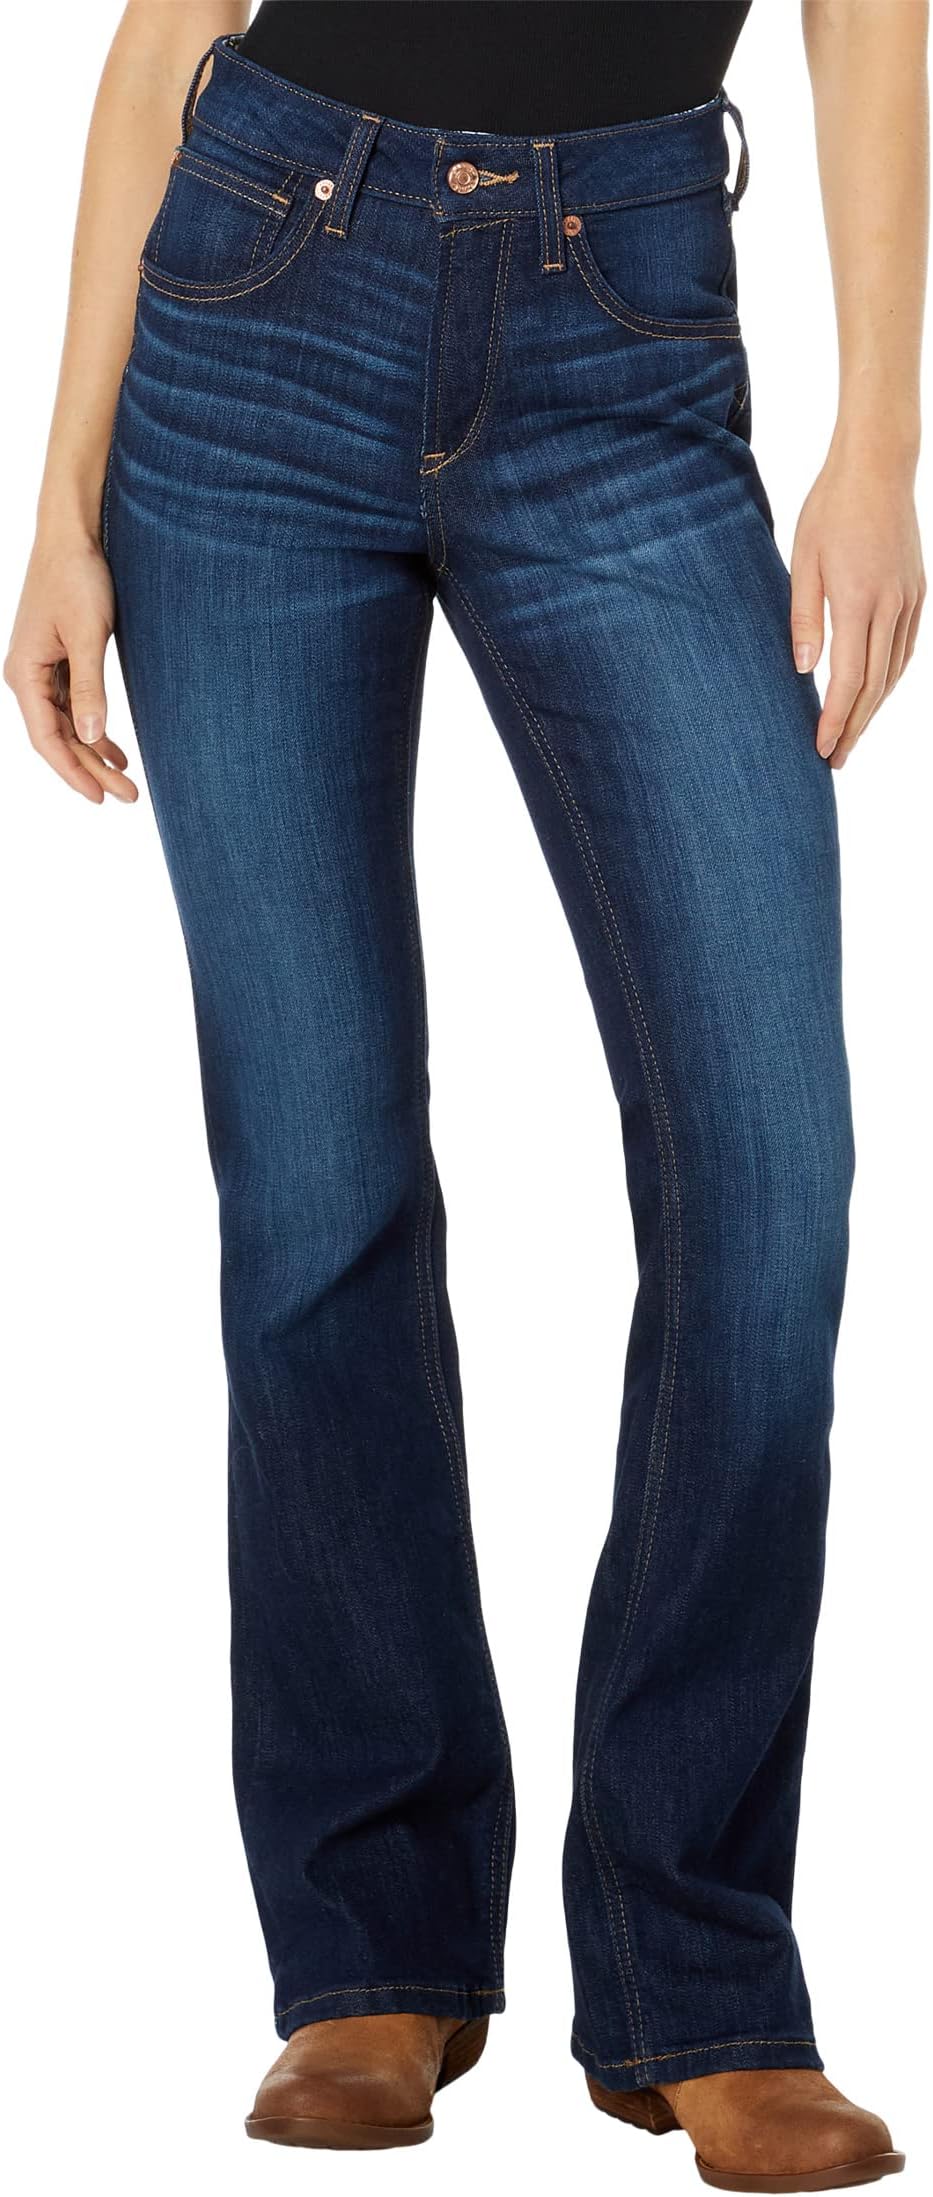 Джинсы Real High-Rise Ballary Bootcut Jeans Ariat, цвет Pennsylvania джинсы r e a l mid rise raquel bootcut jeans ariat цвет canadian